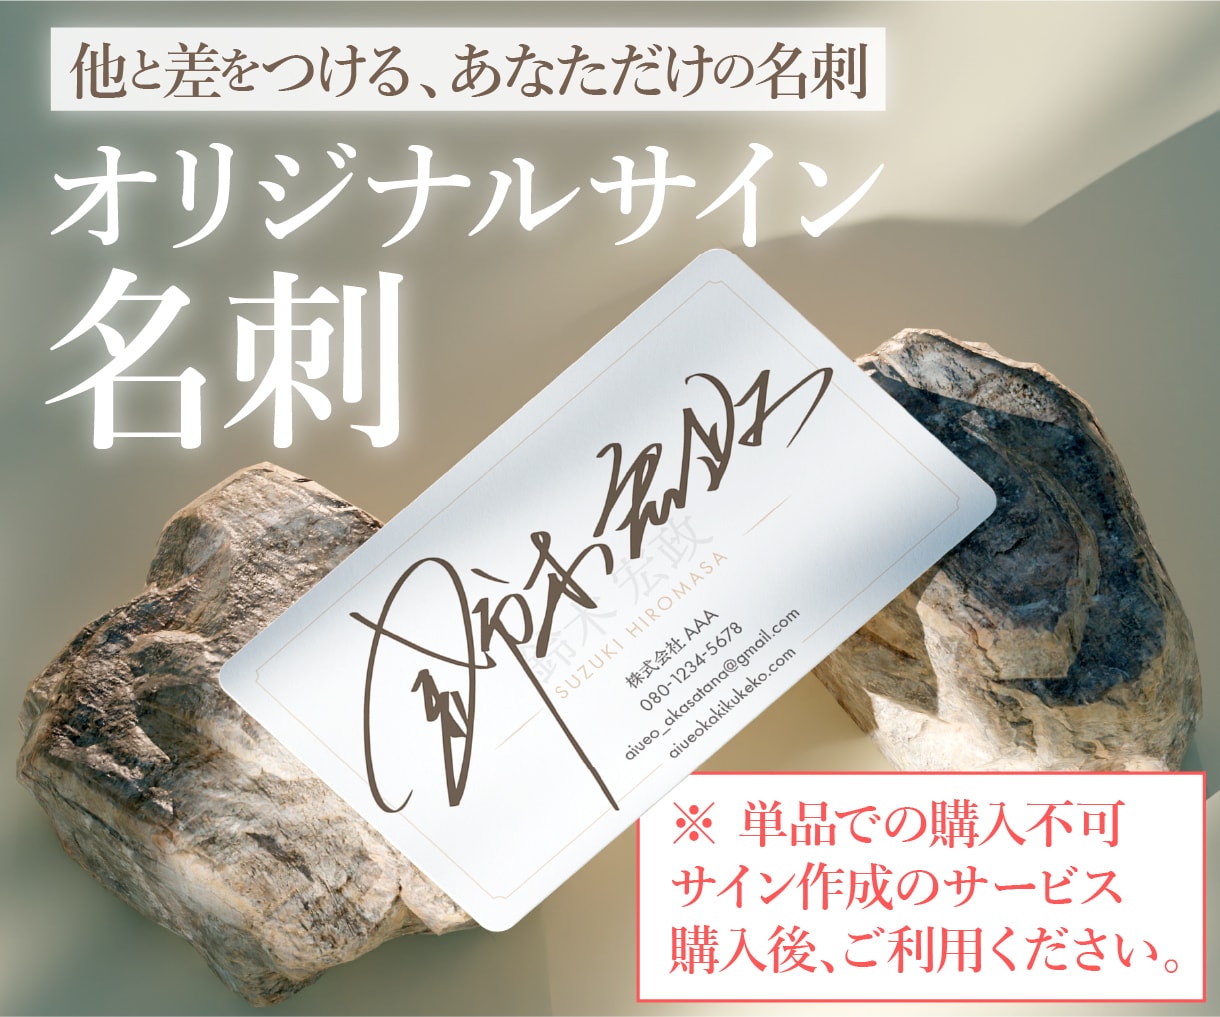 💬ココナラ｜サイン作成後、サイン入りの名刺を作成いたします   羽島季麻デザイナー・イラストレーター  
                5.0
  …